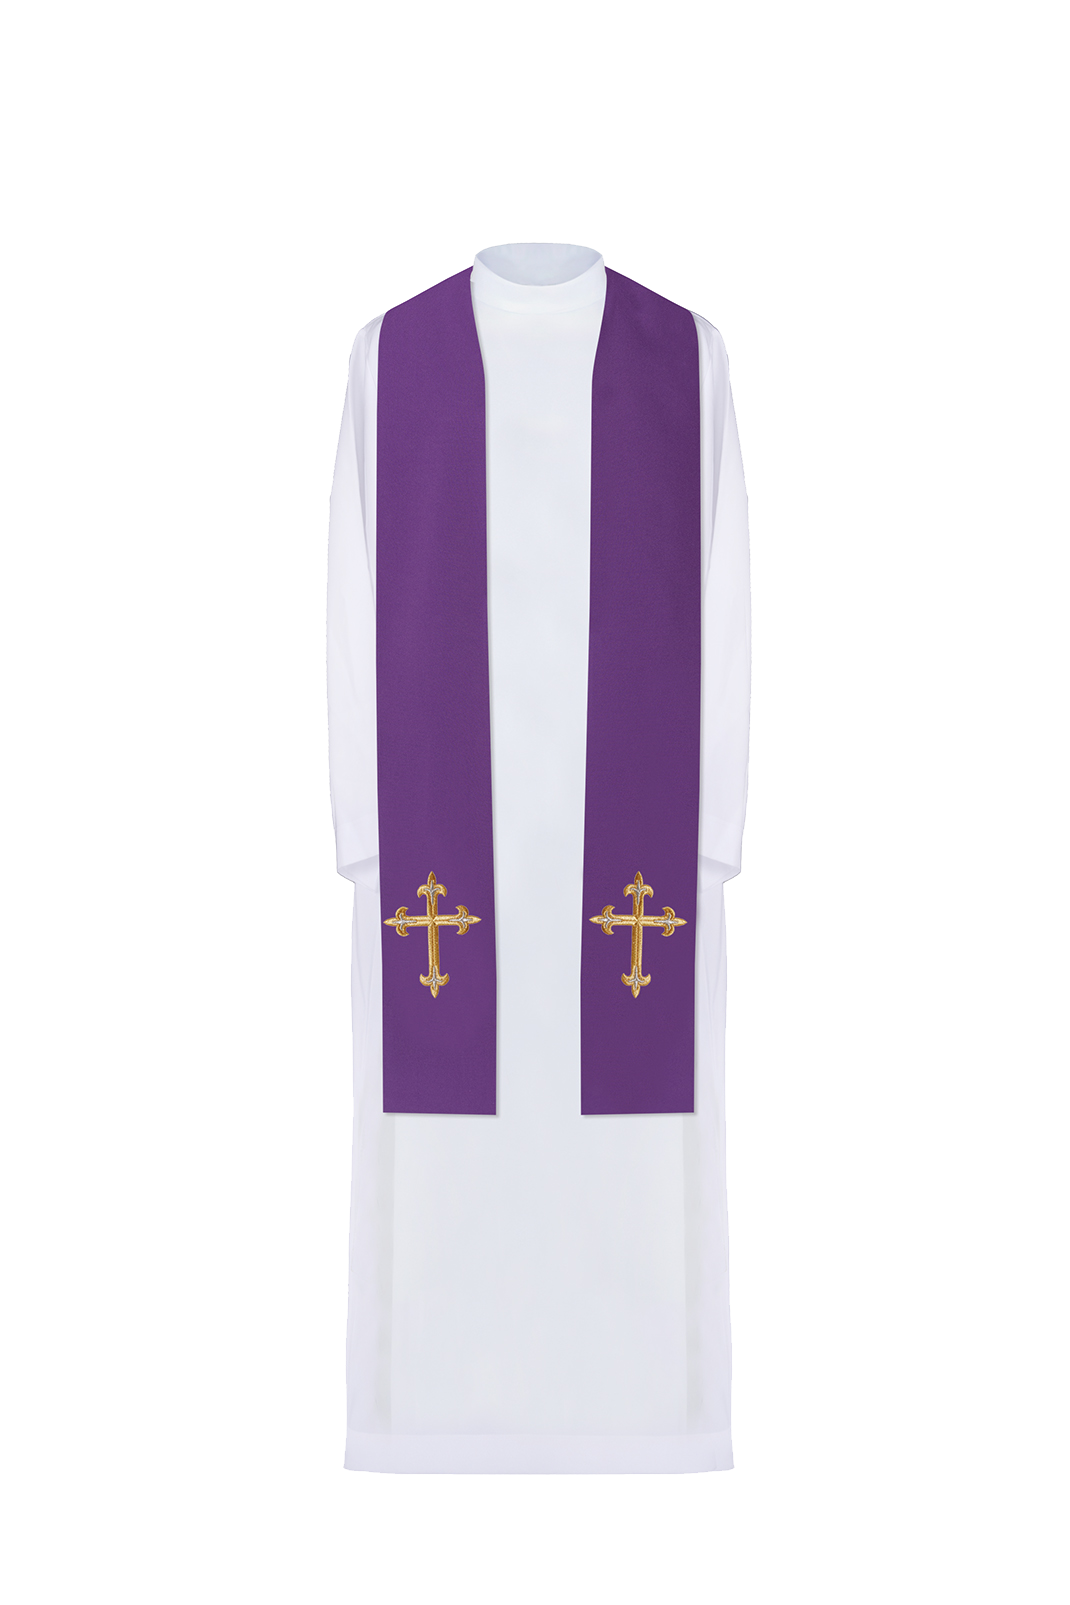 Stuła kapłańska haftowana Krzyż Fioletowa